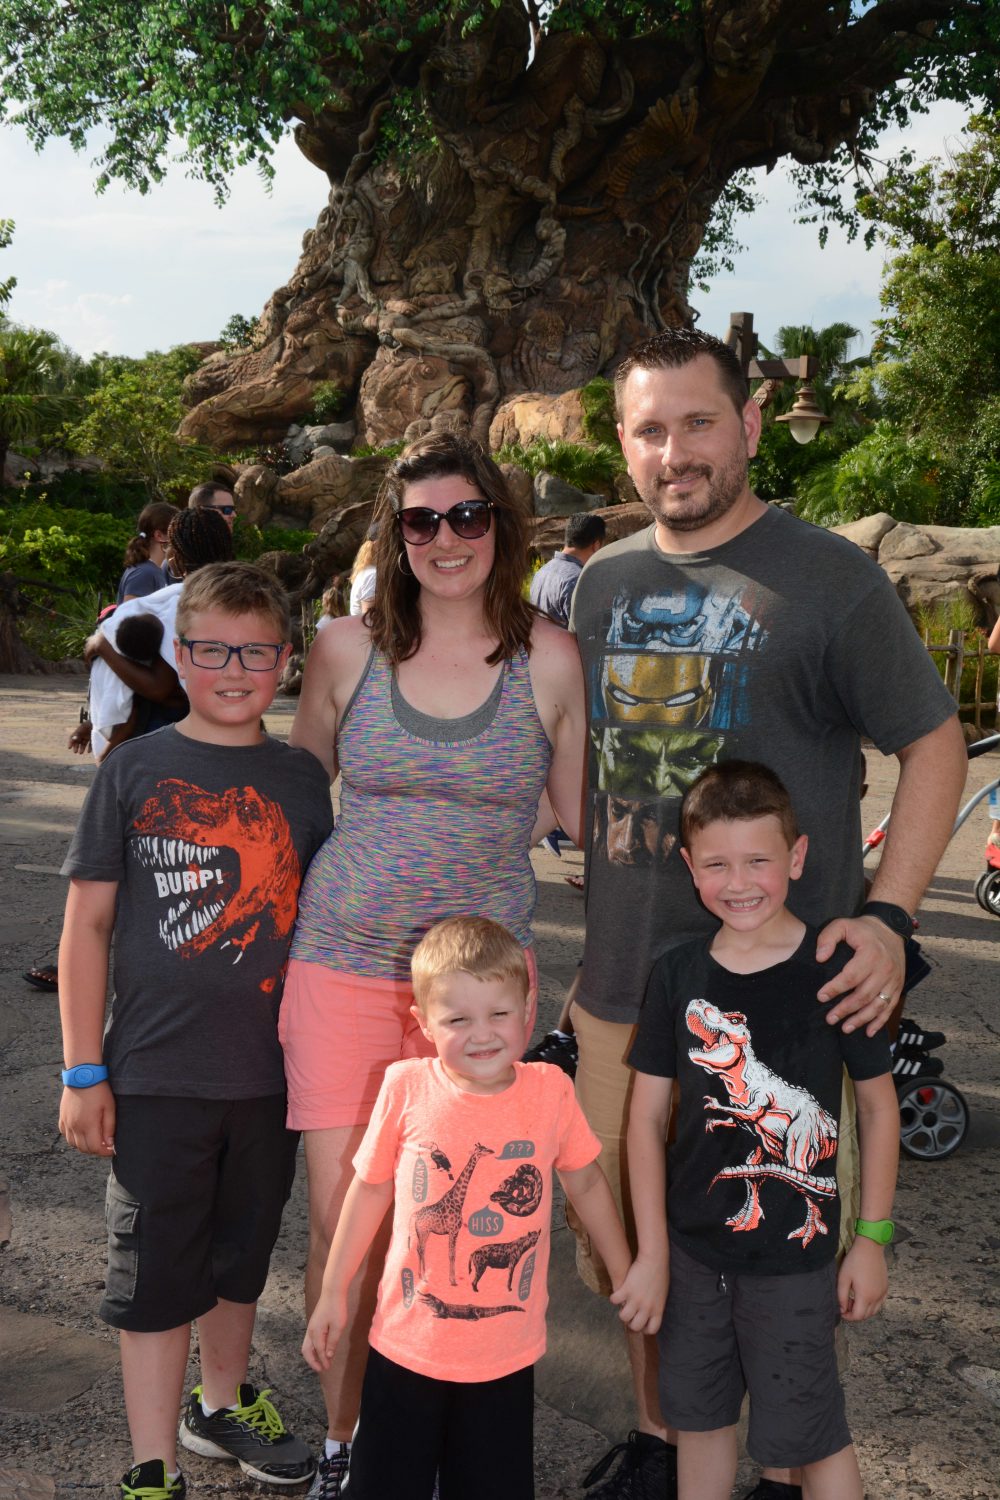 Family photo at Animal Kingdom in Disney